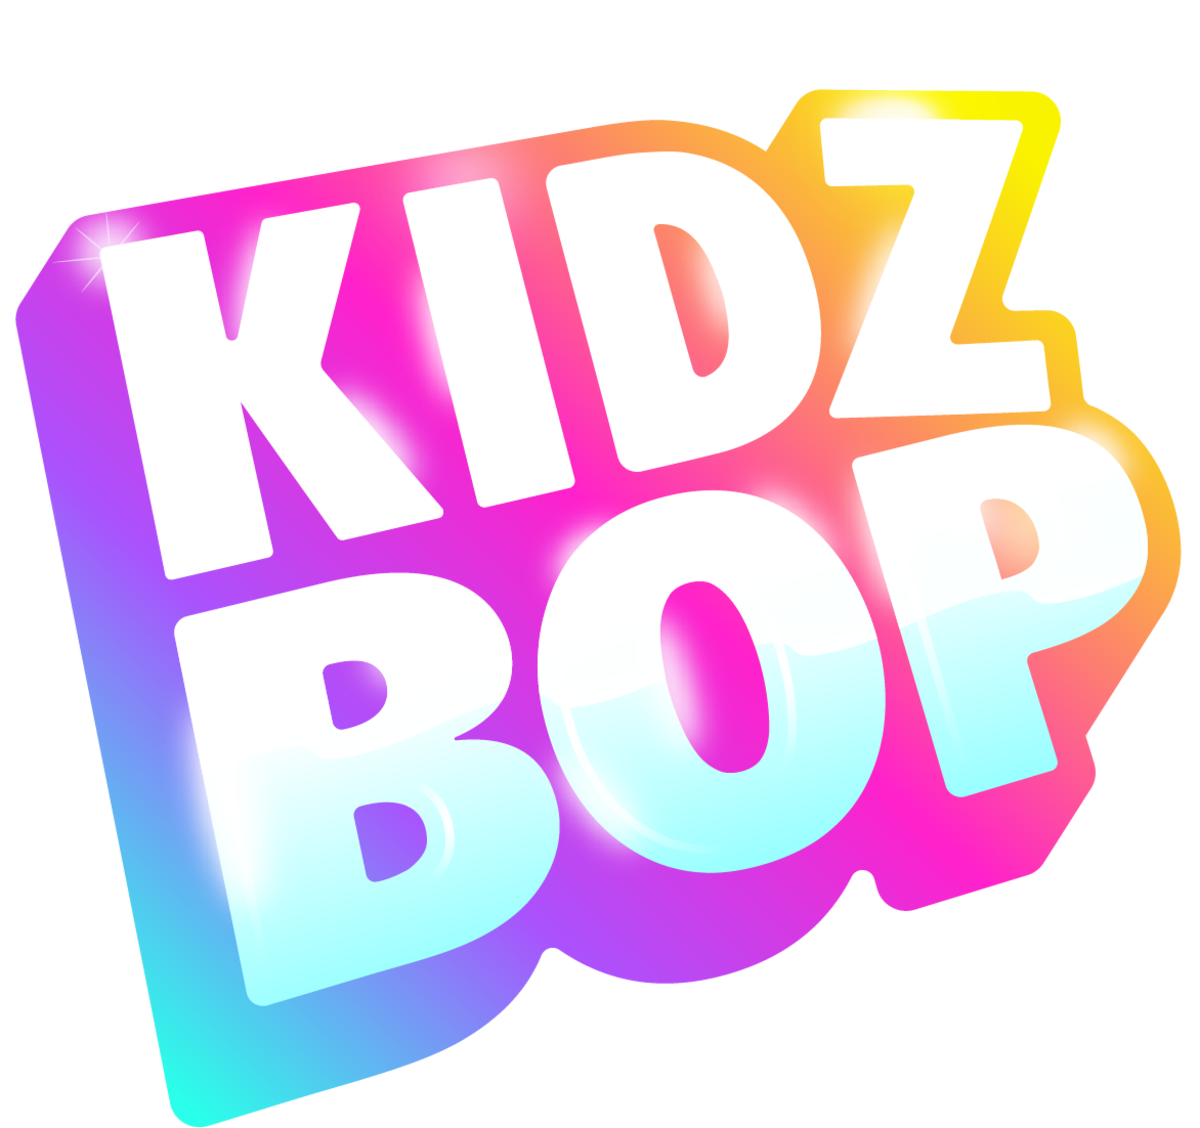 Kidz Bop Kids - Kidz Bop, Vol. 12